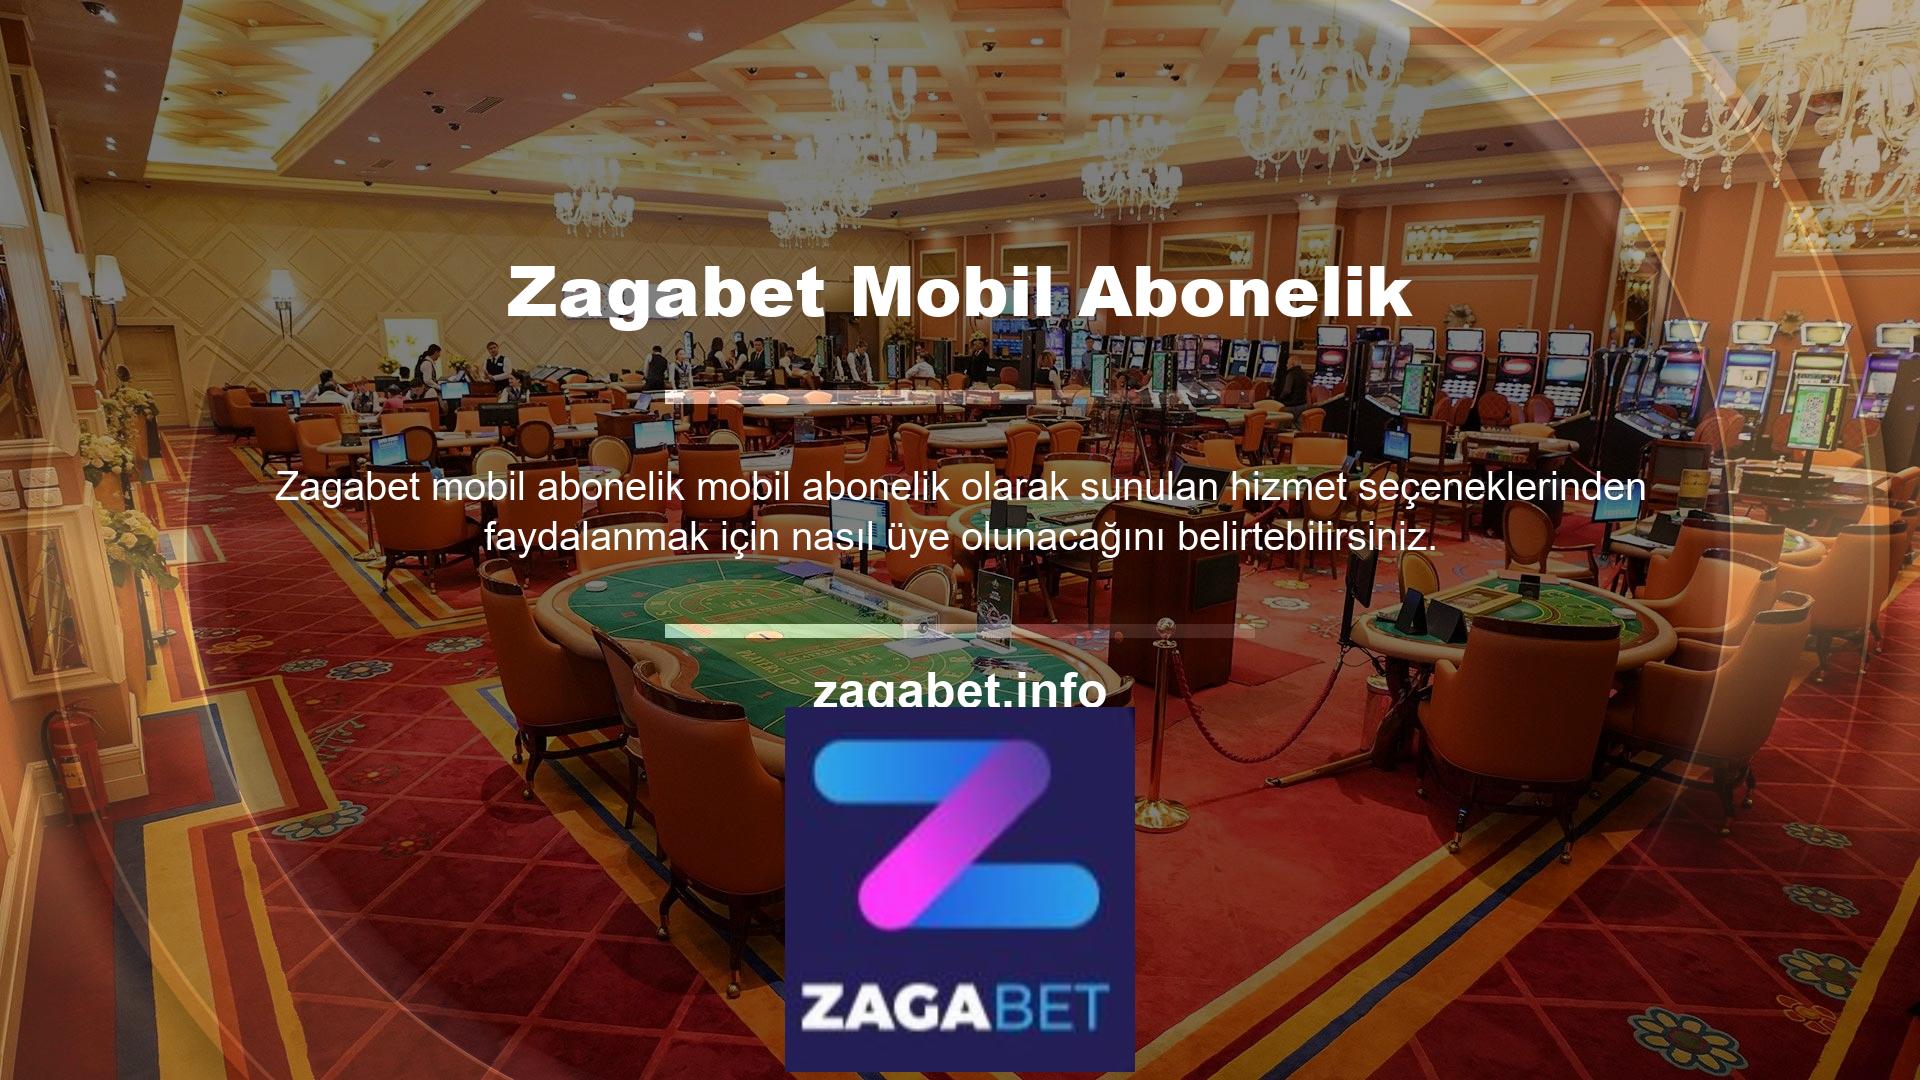 Bahis sitesi Zagabet, resmi olarak açılmış olup, uzun yıllardır bahis ve casino hizmetleri vermektedir